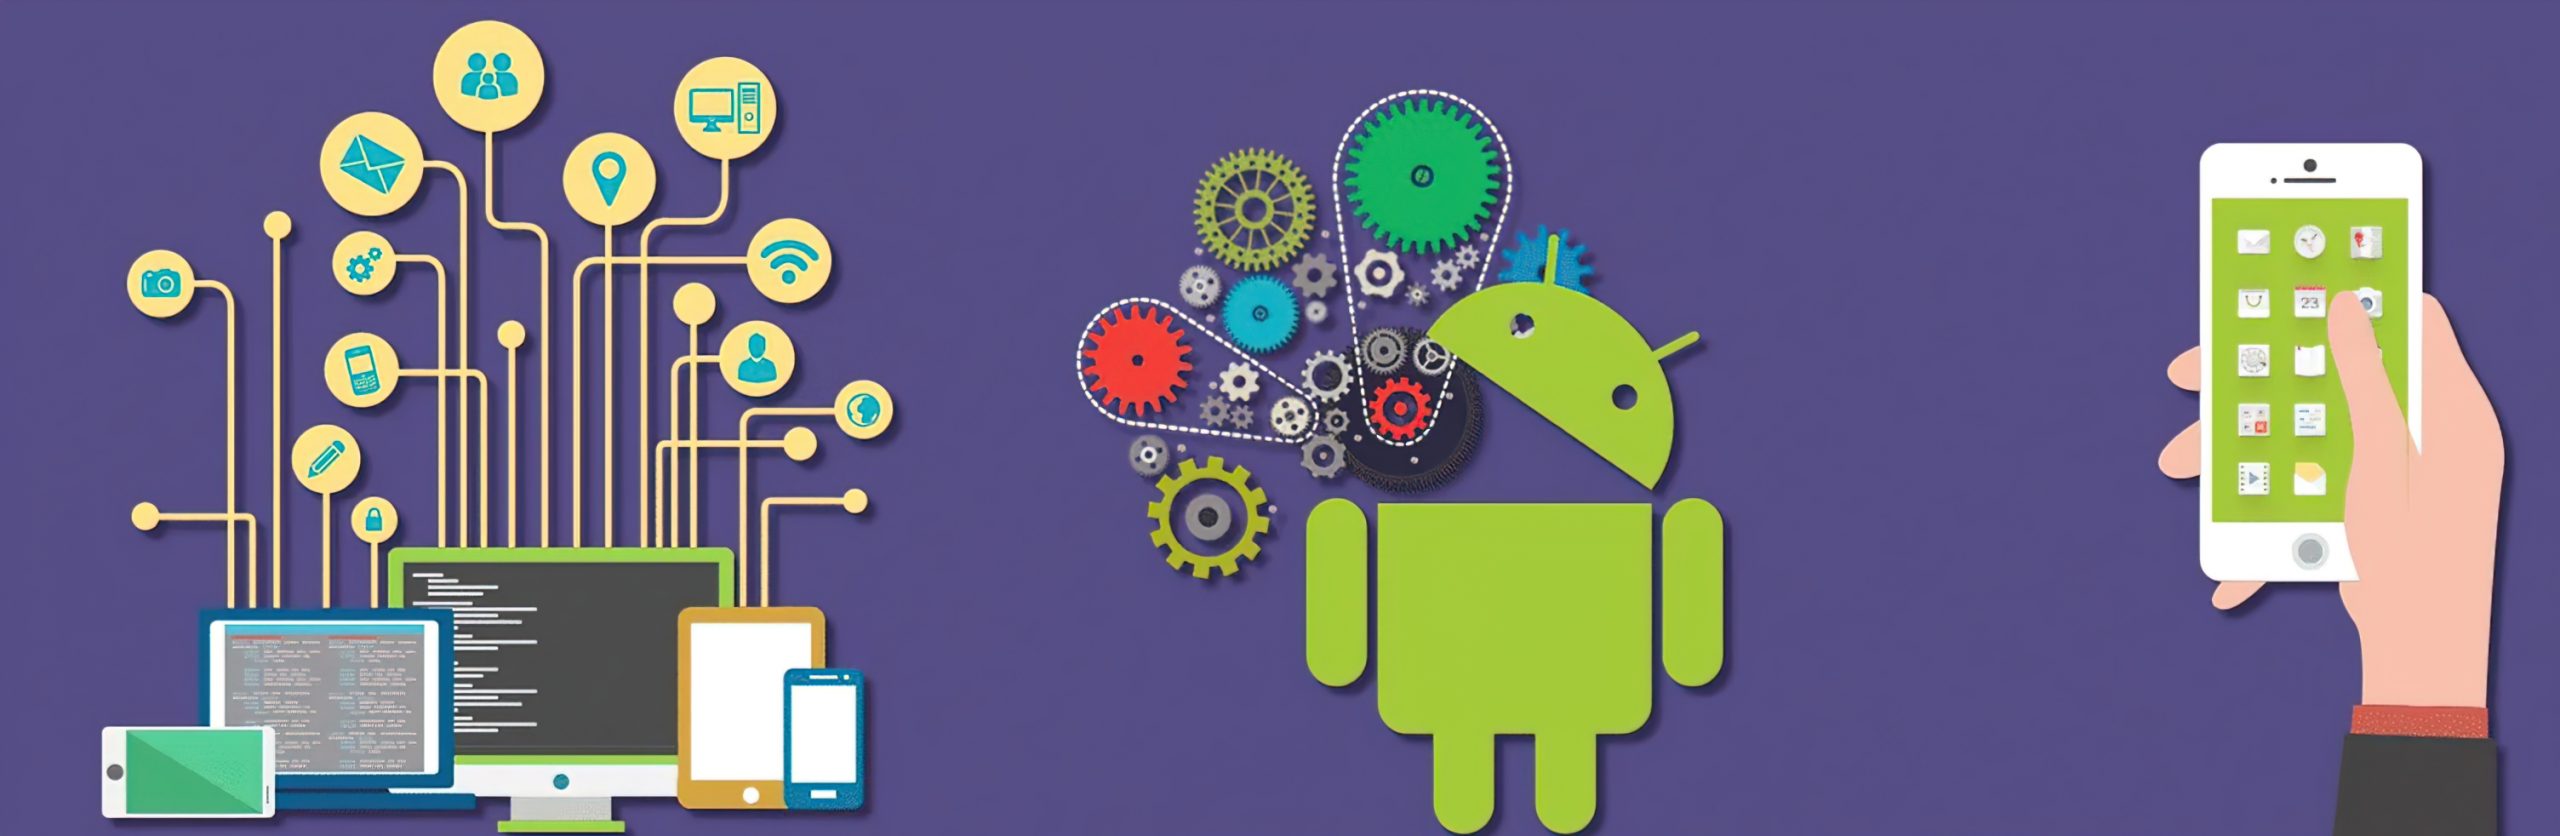 Работа на рекламе на андроид. Андроид разработка. Android Разработчик. Разработчик приложений для Android. Баннер для андроид разработчика.